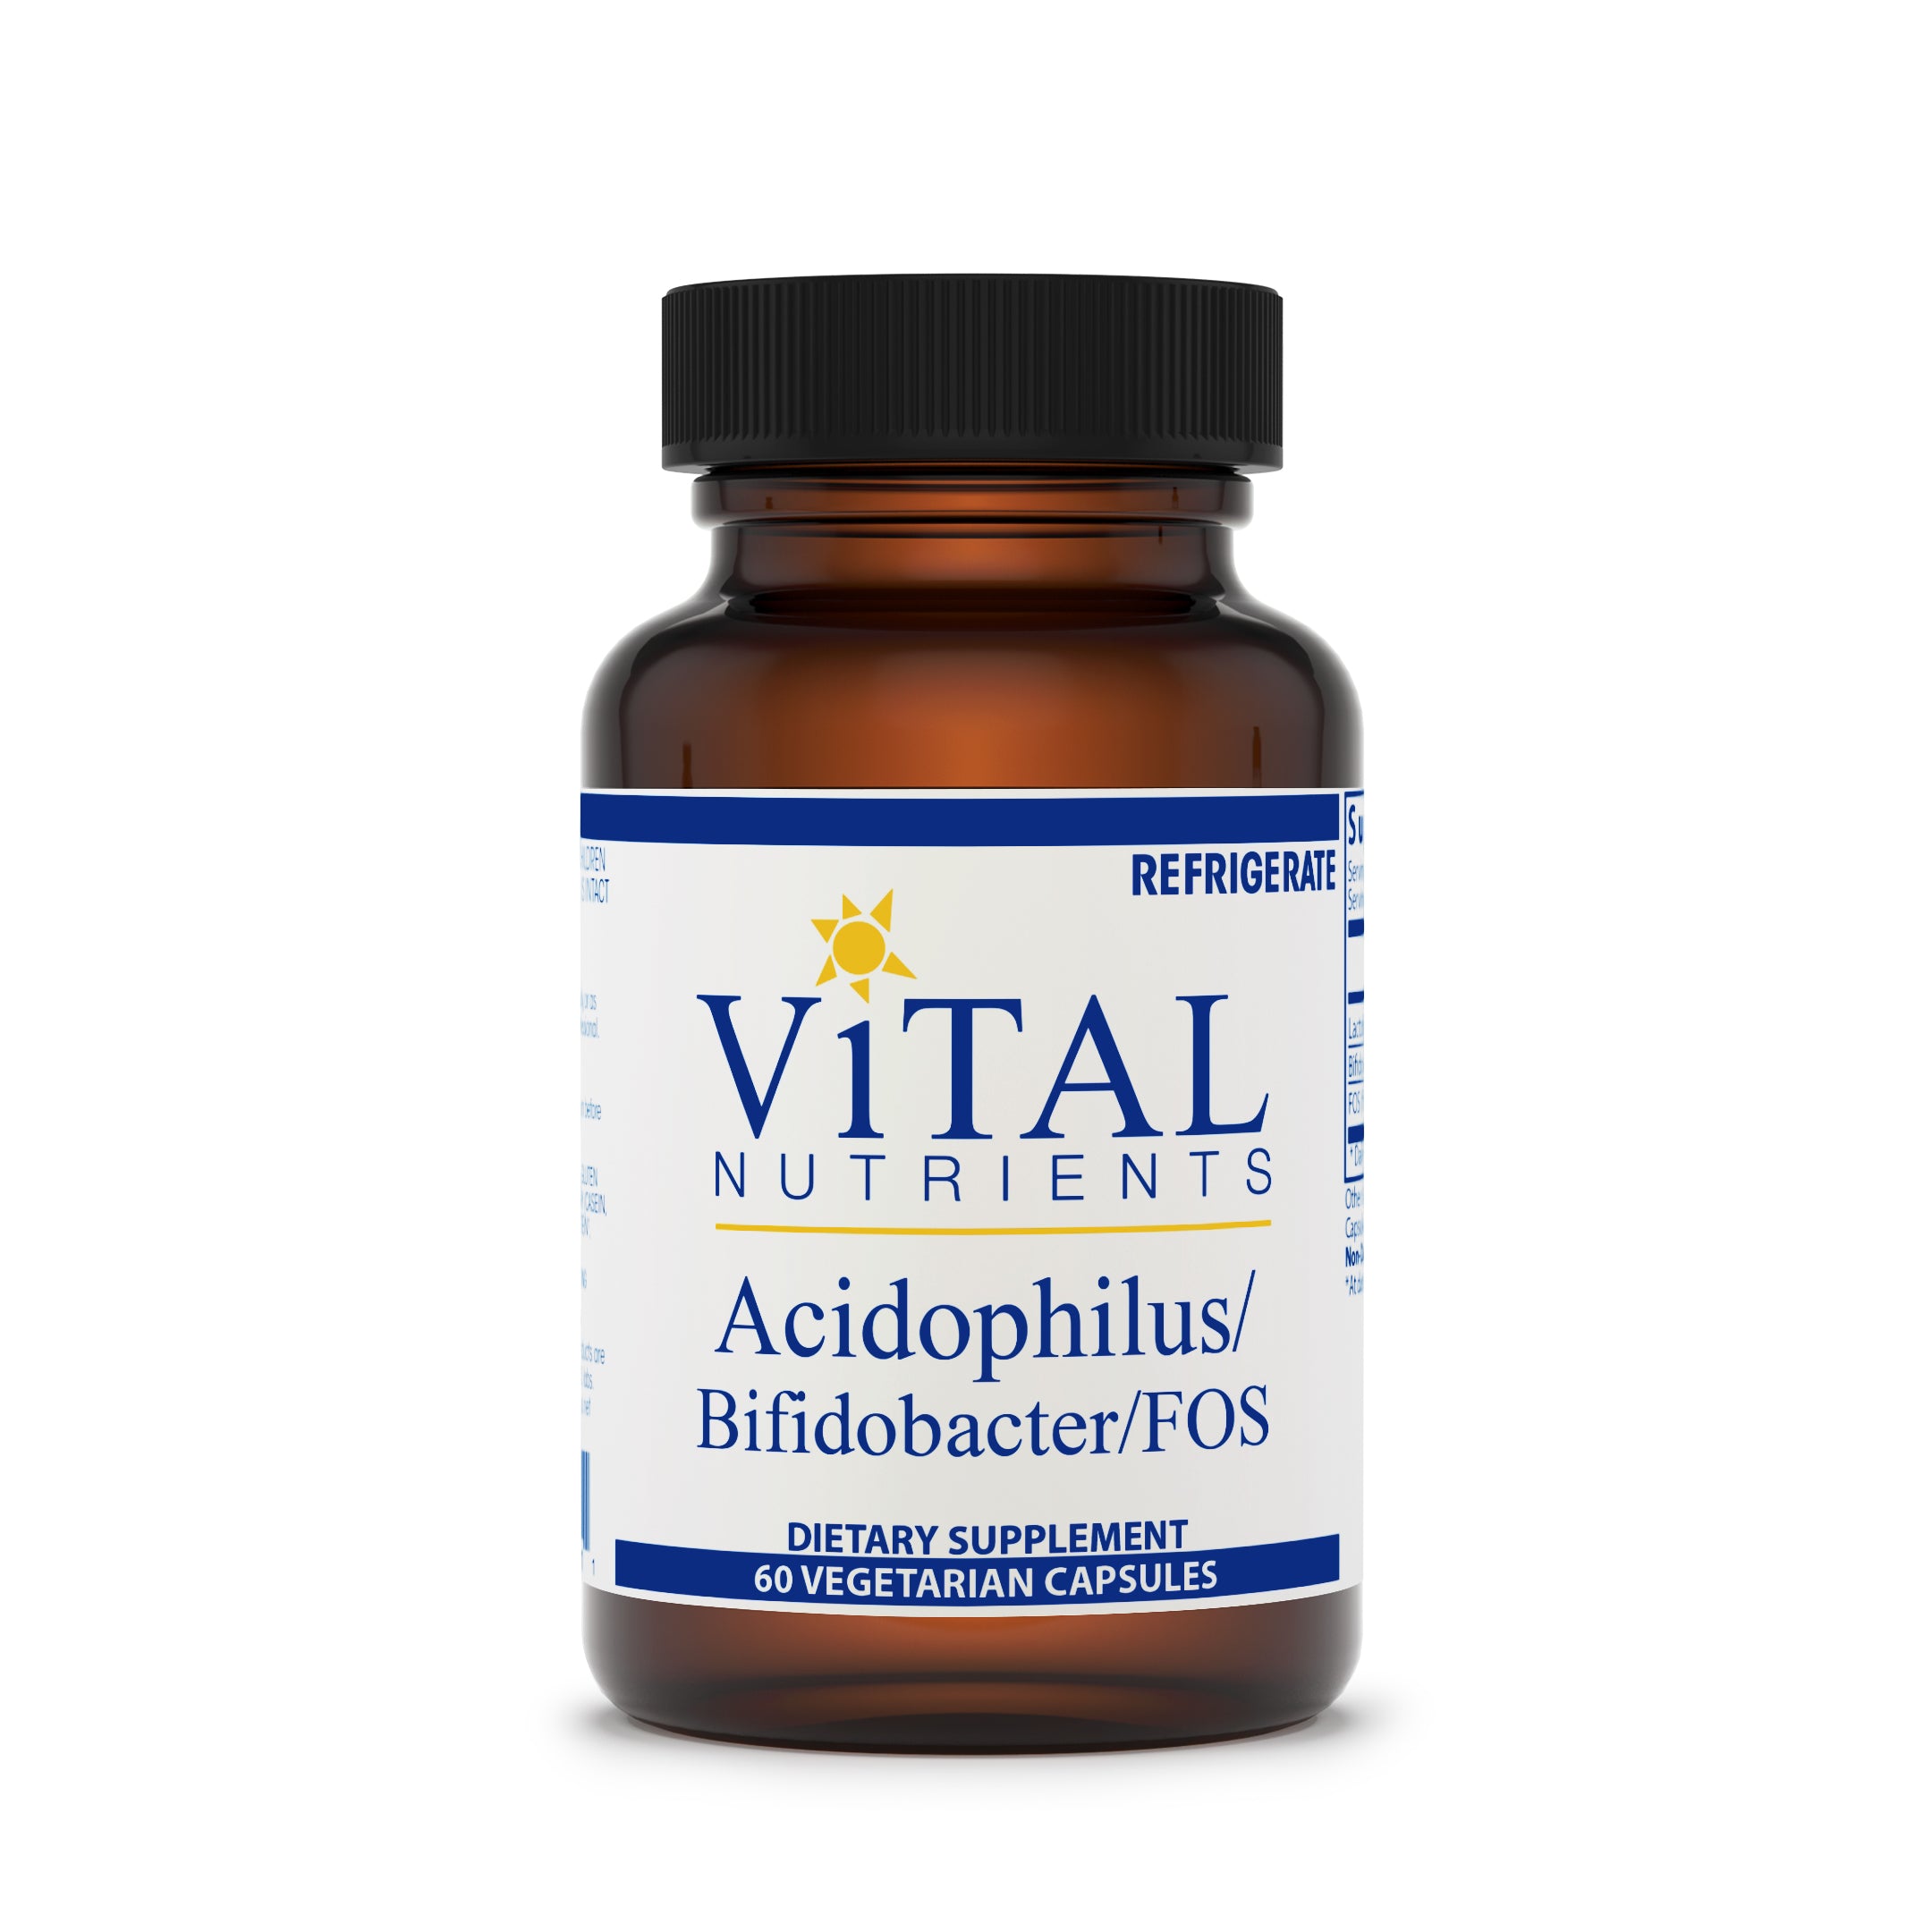 Acidophilus/Bifidobacter/FOS